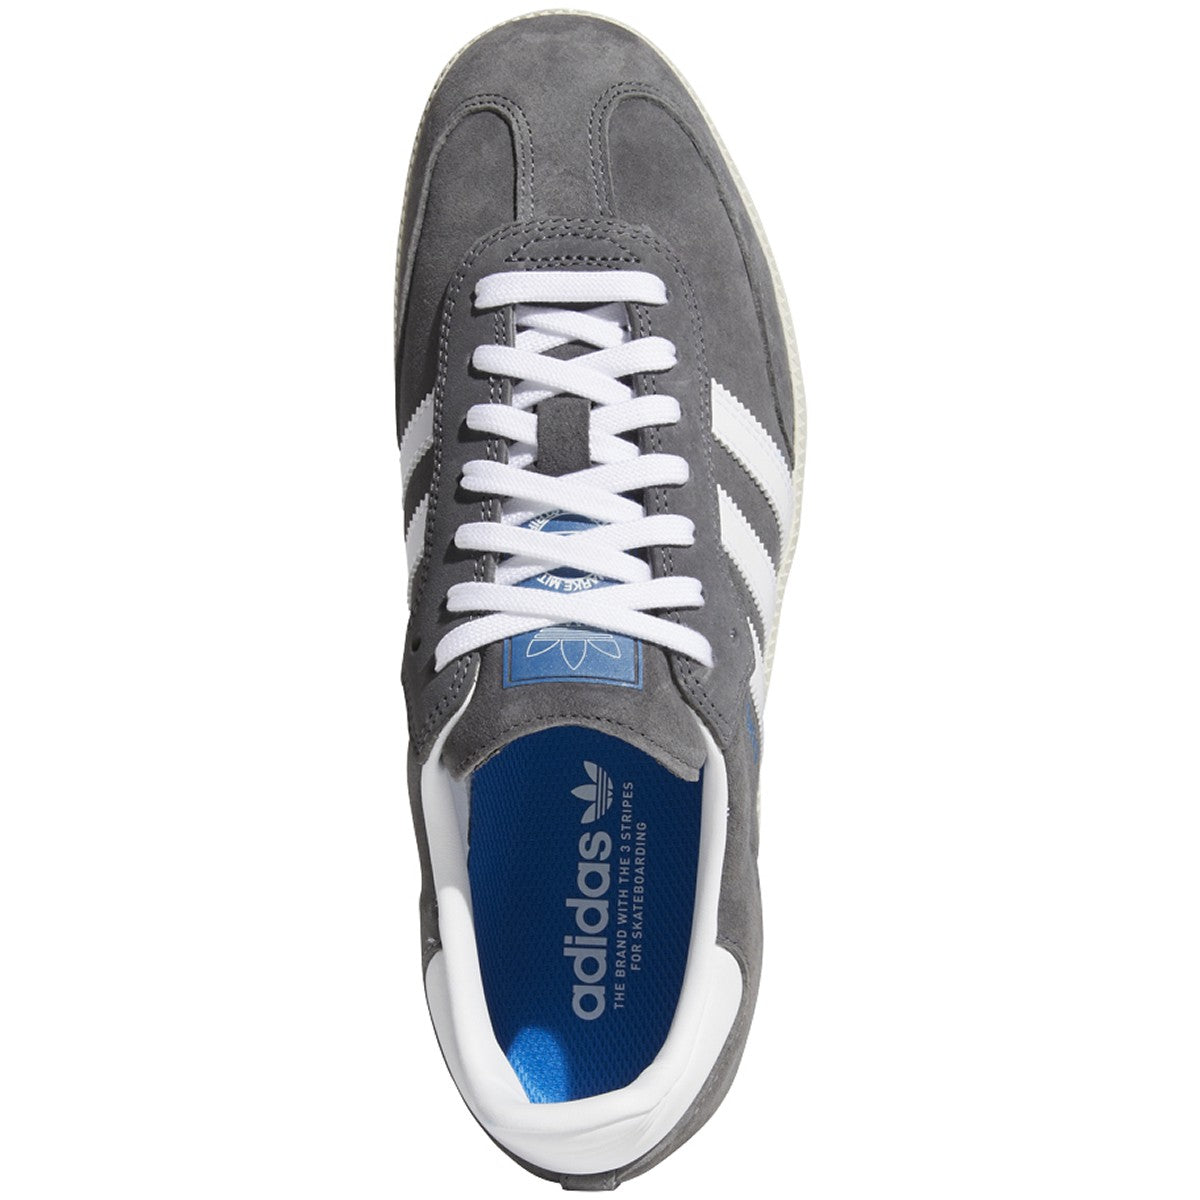 Adidas Samba ADV Skateboard Shoe - Grey Five/White/Blue Bird